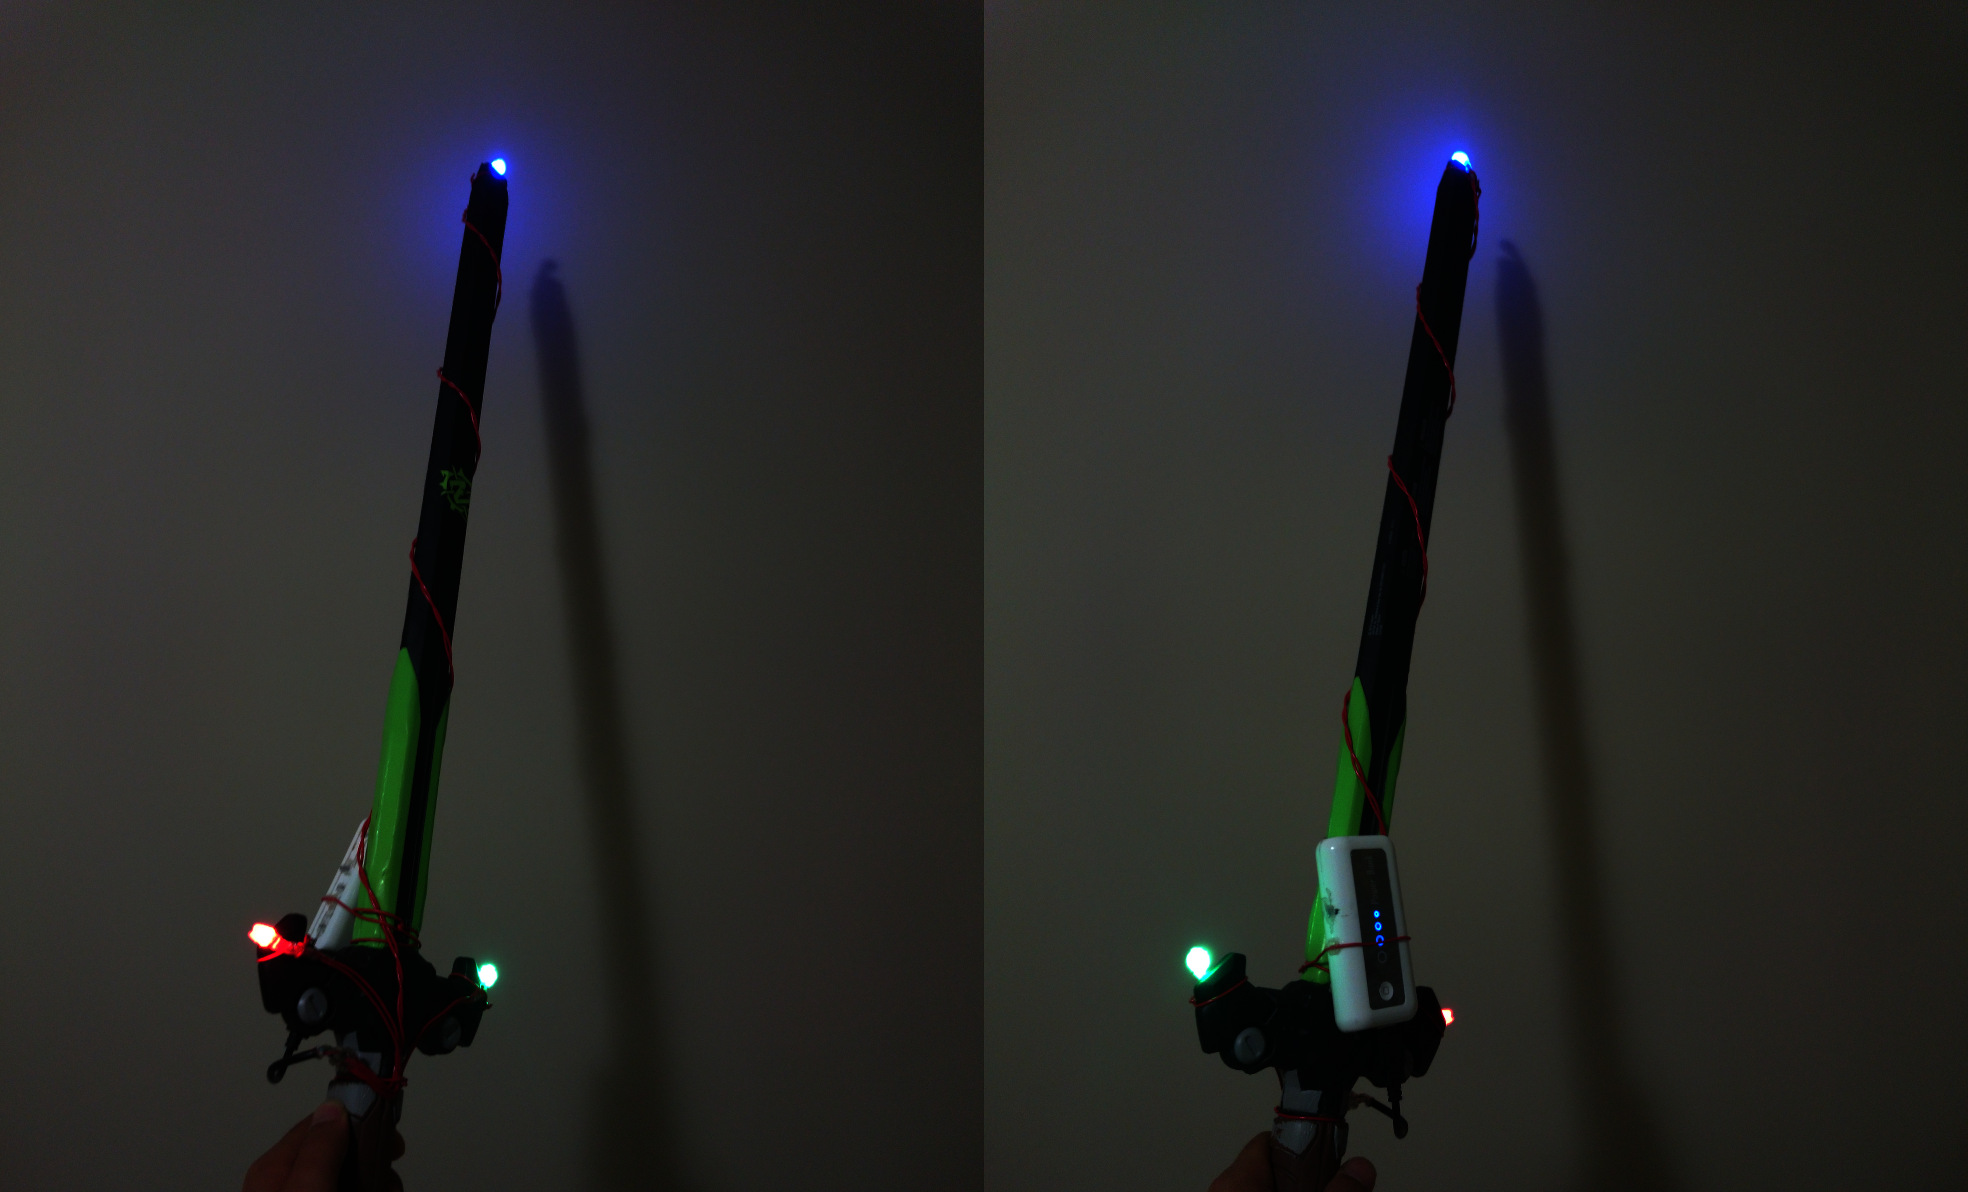 LED sword prop